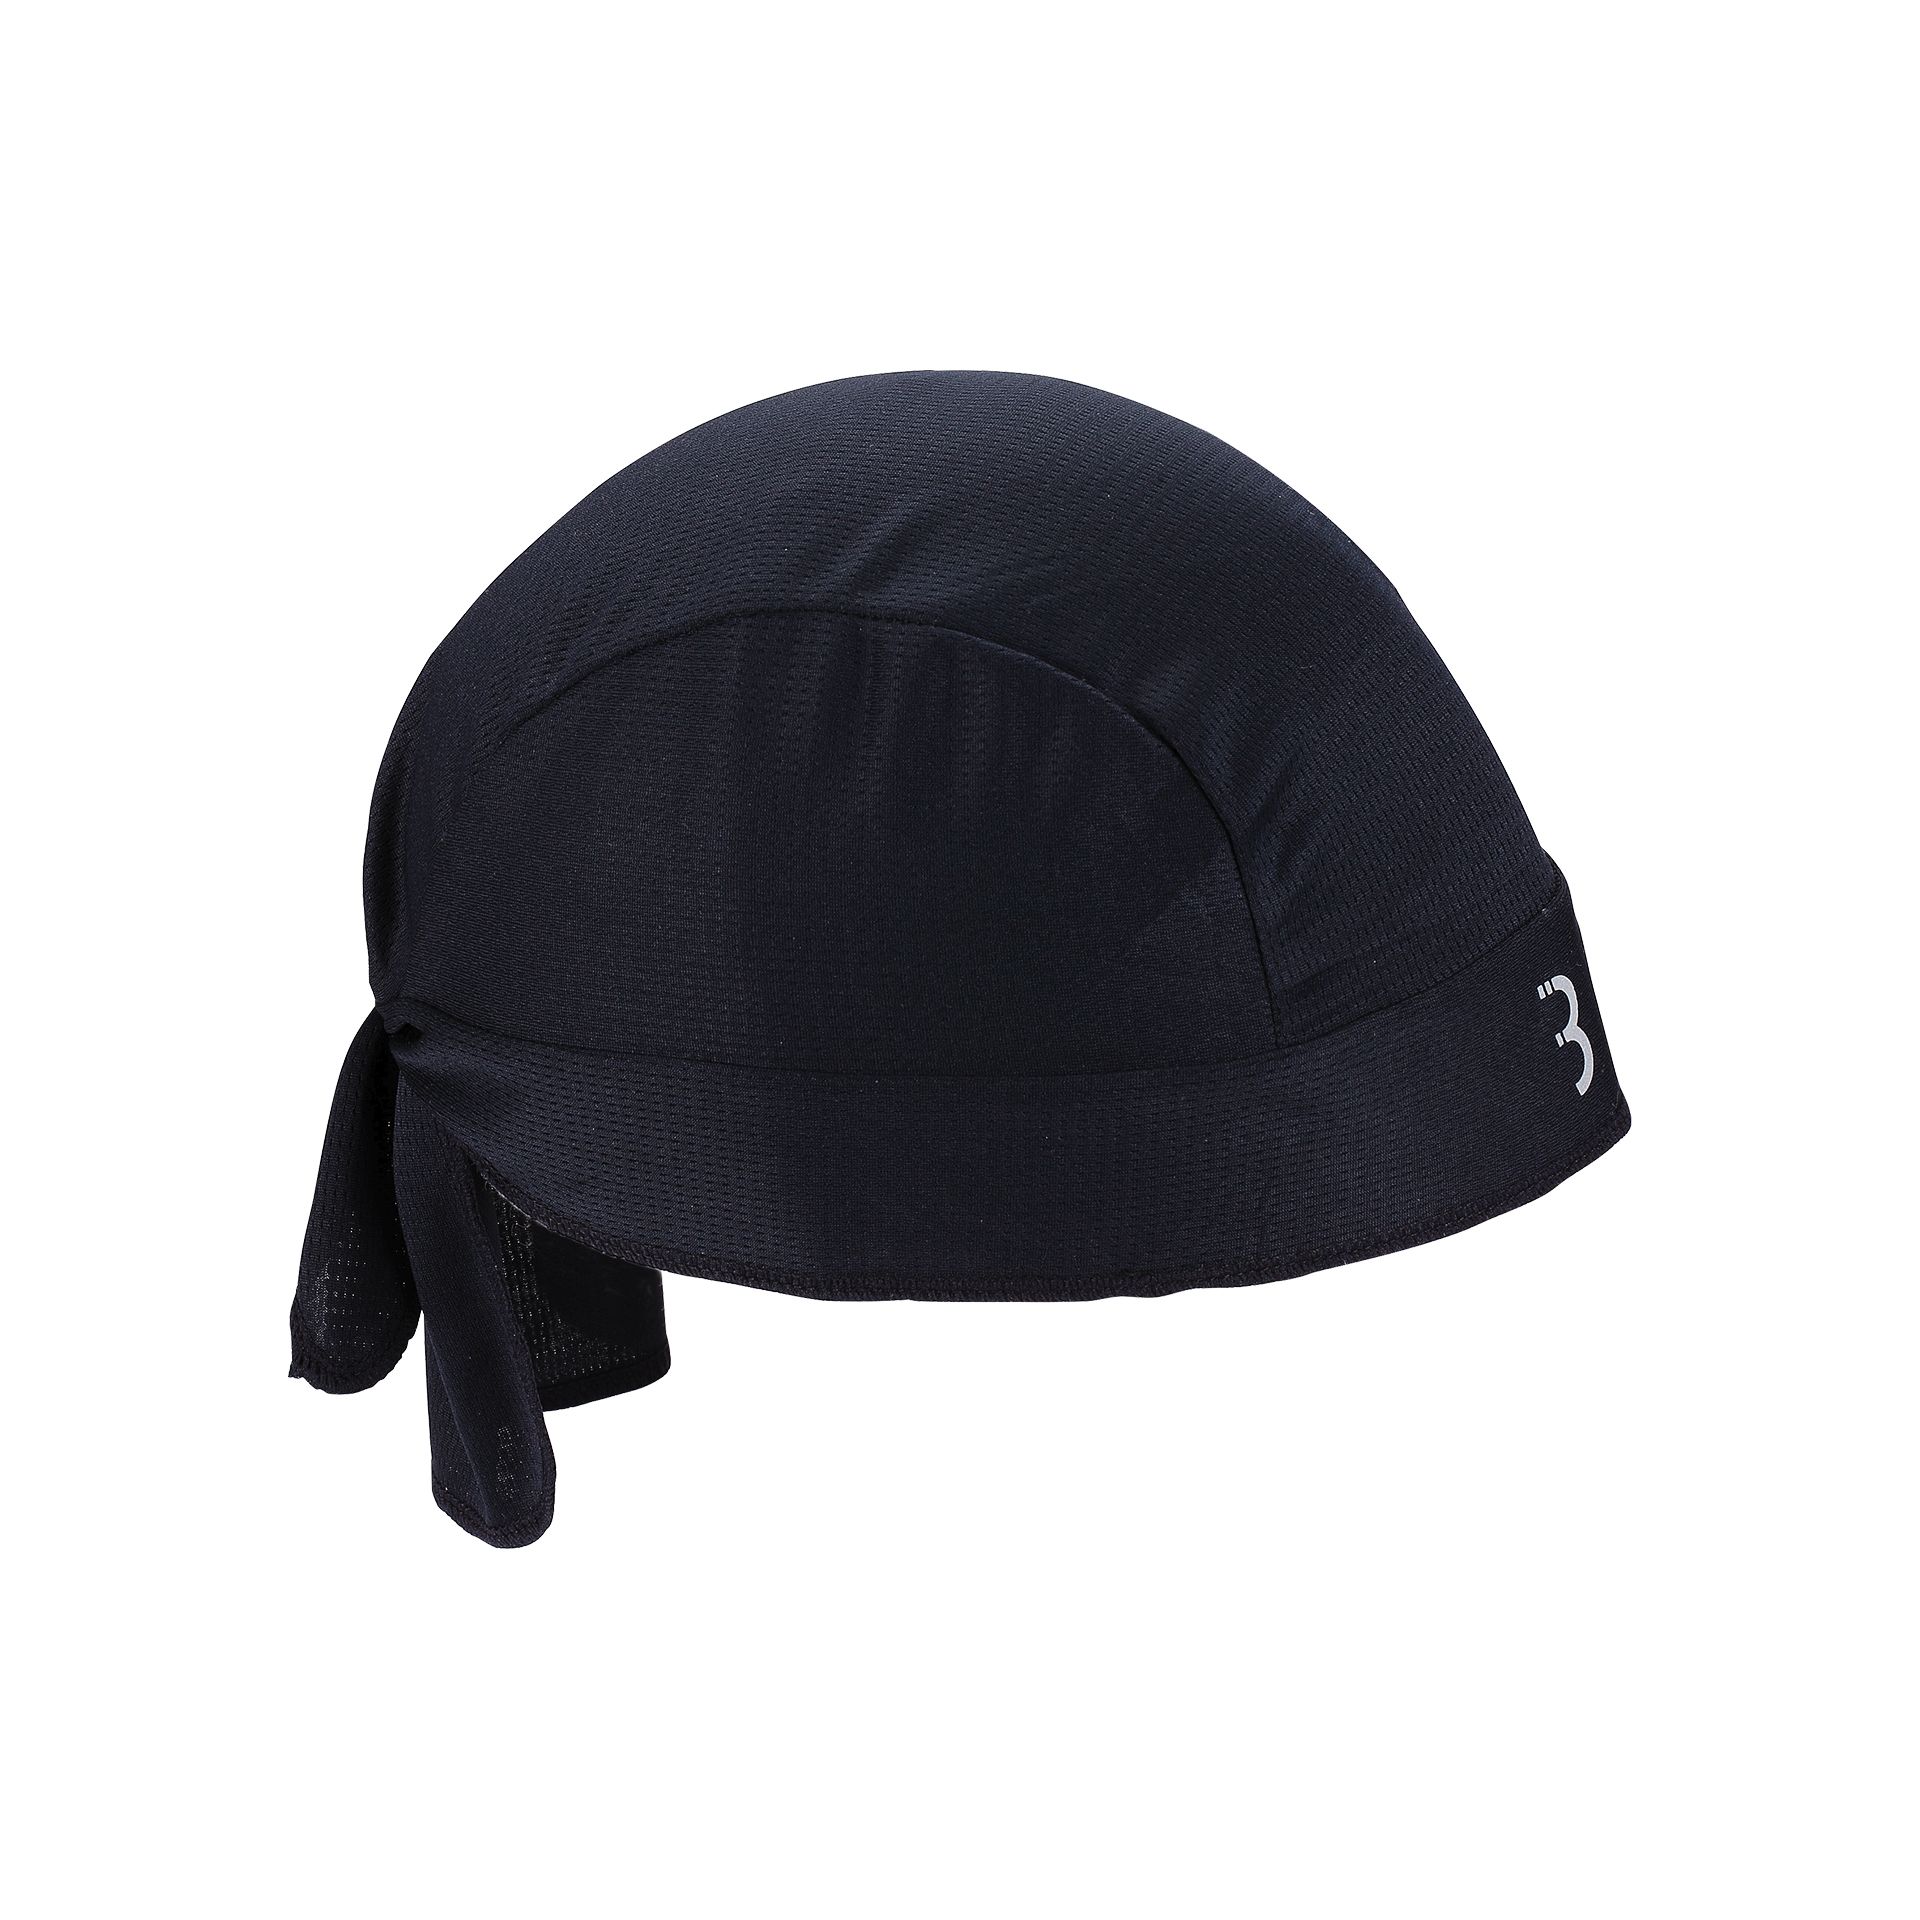 Amsler - Helmmütze Sommer als Sonnenschutz / Feuchtigkeitsabsorbtion, schwarz